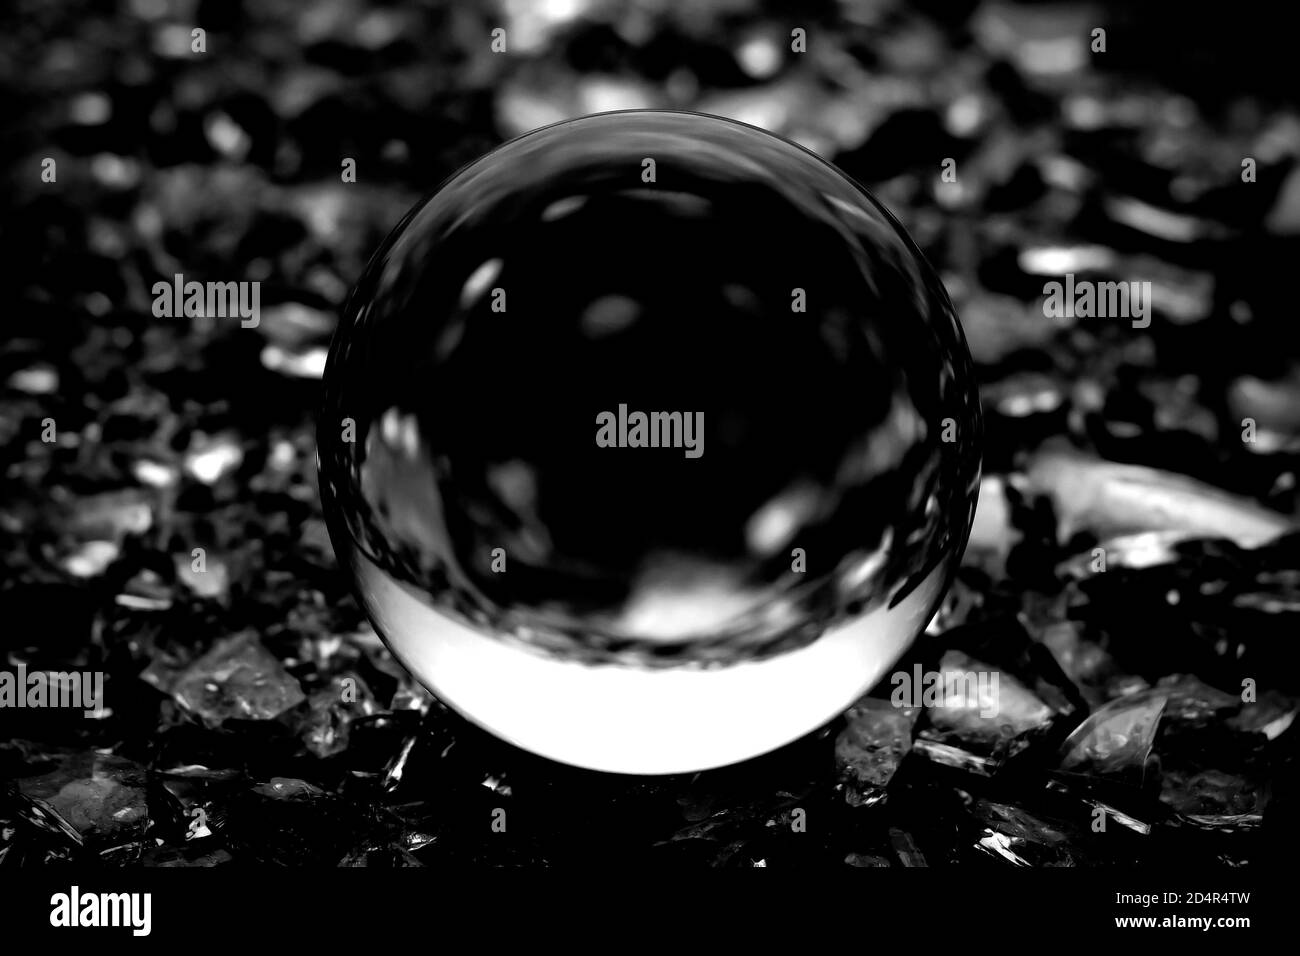 Una imagen borrosa de una bola de cristal transparente. Imagen en blanco y negro de una pelota de lente en borrosidad abstracta. Foto de stock